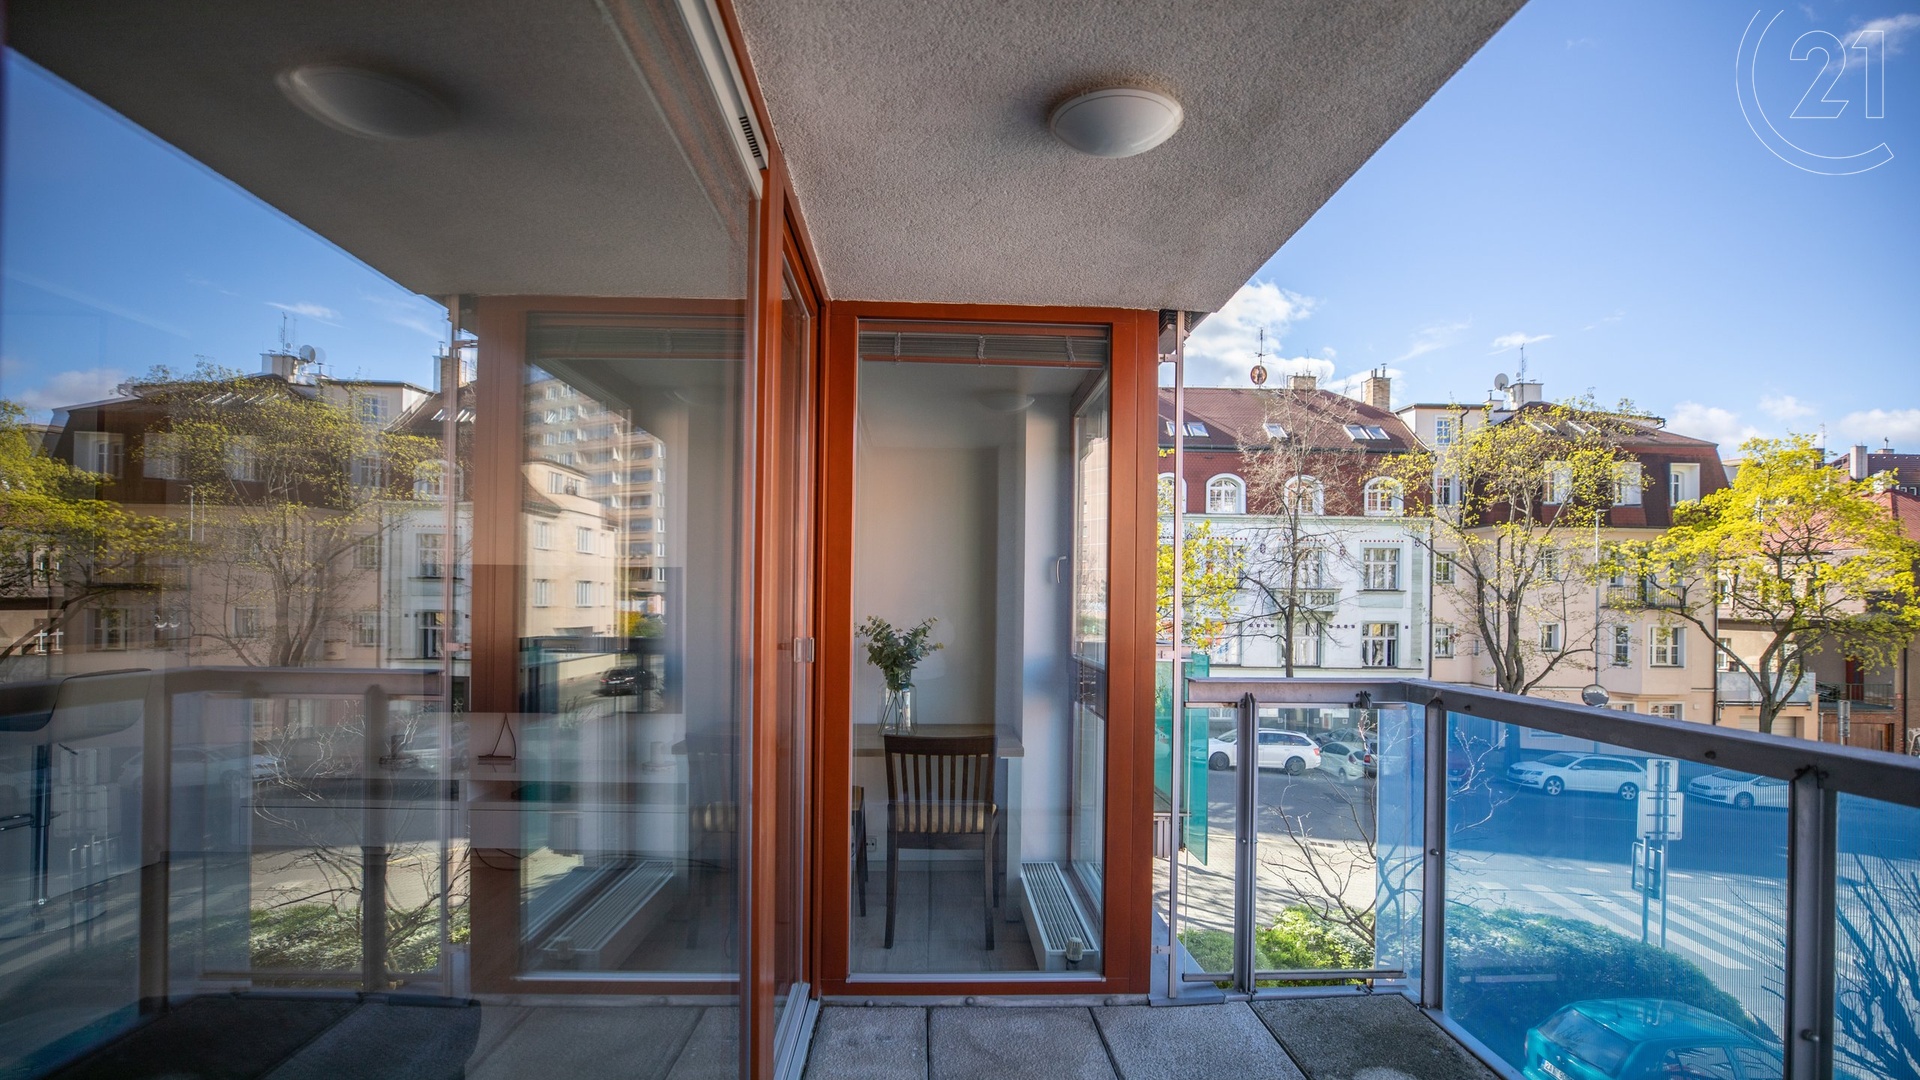 Pronájem bytu 2+kk s balkonem, garážovým stáním a sklepem, 55 m², Praha - Podolí